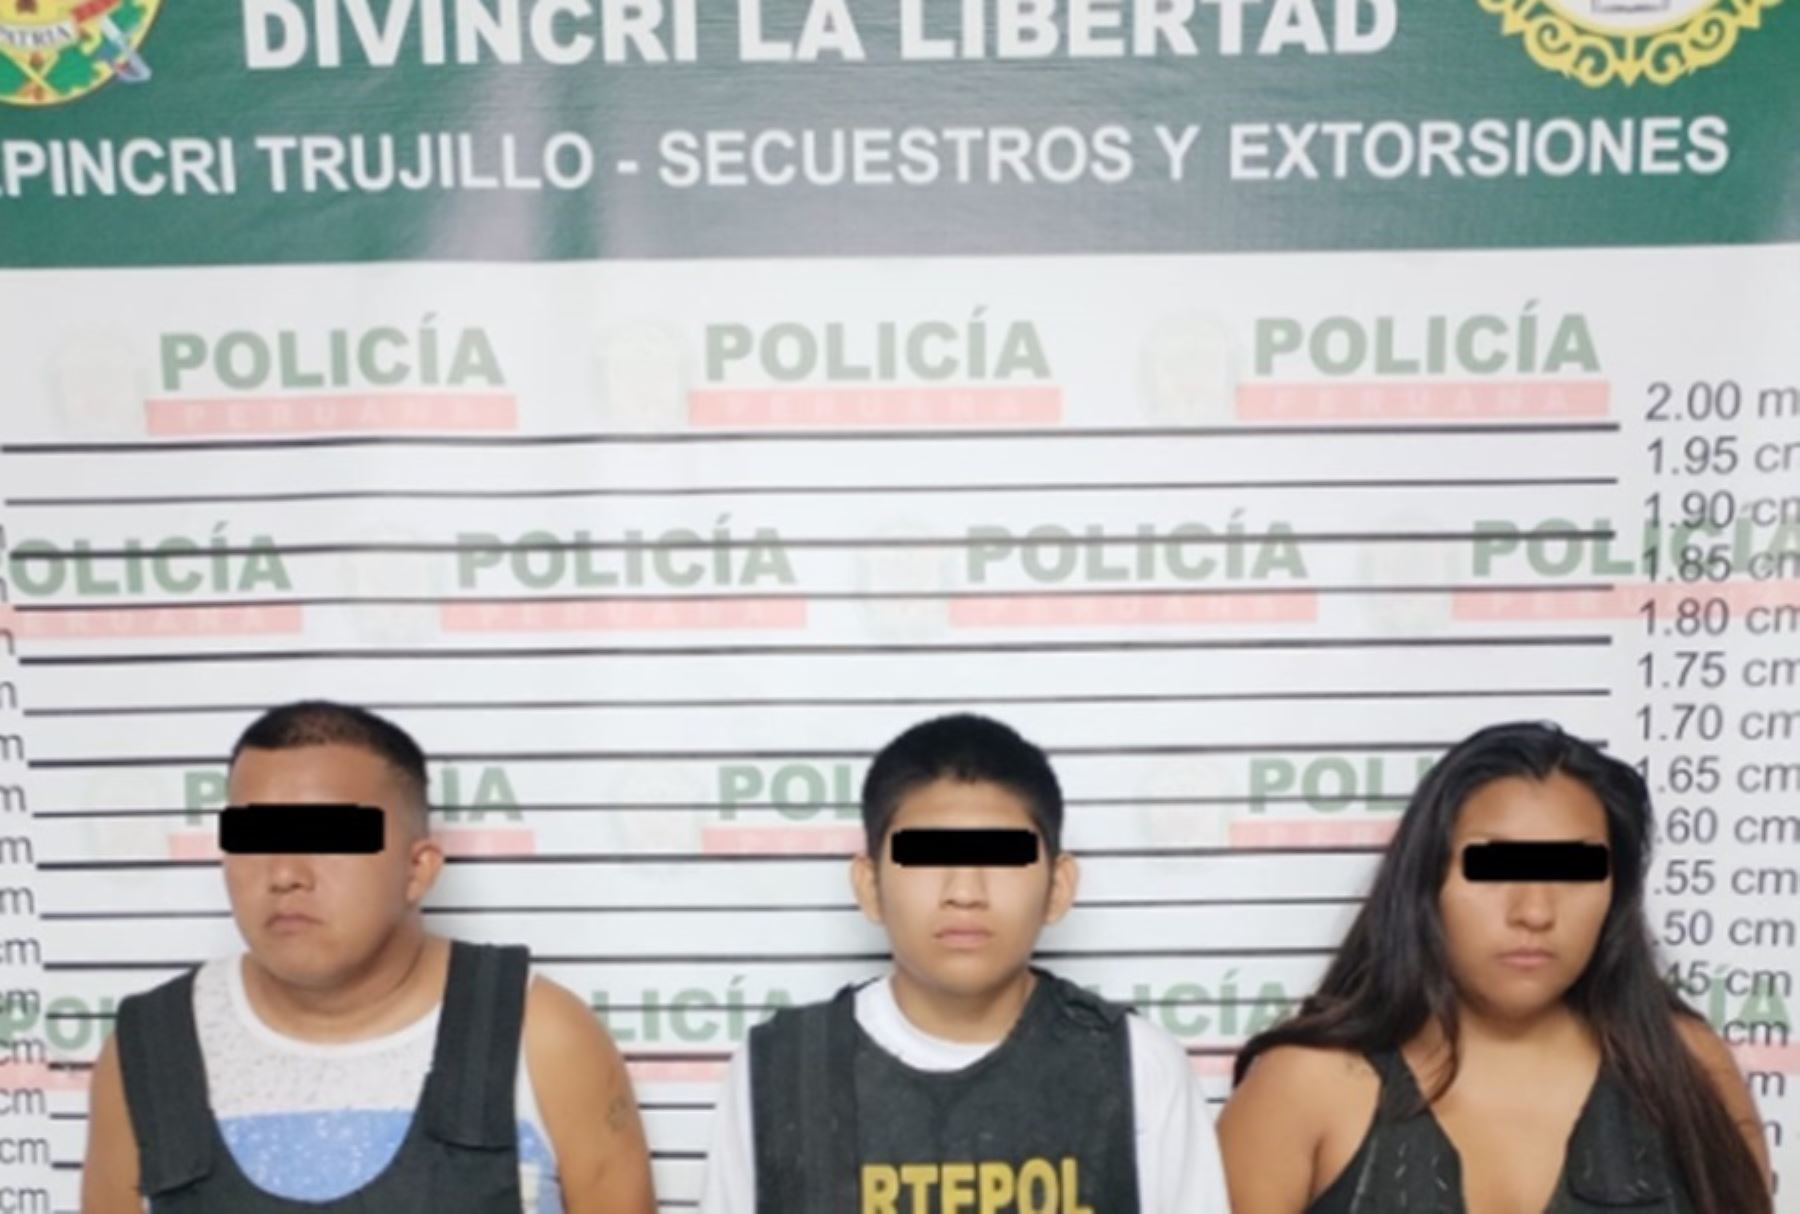 Una banda de extorsionadores que fue detenida el miércoles 21 de febrero, cuando cobraba un cupo extorsivo a una familia trujillana, estaría también involucrada en las amenazas dirigidas a la señora Petronila Gonzales, madre del futbolista Paolo Guerrero.